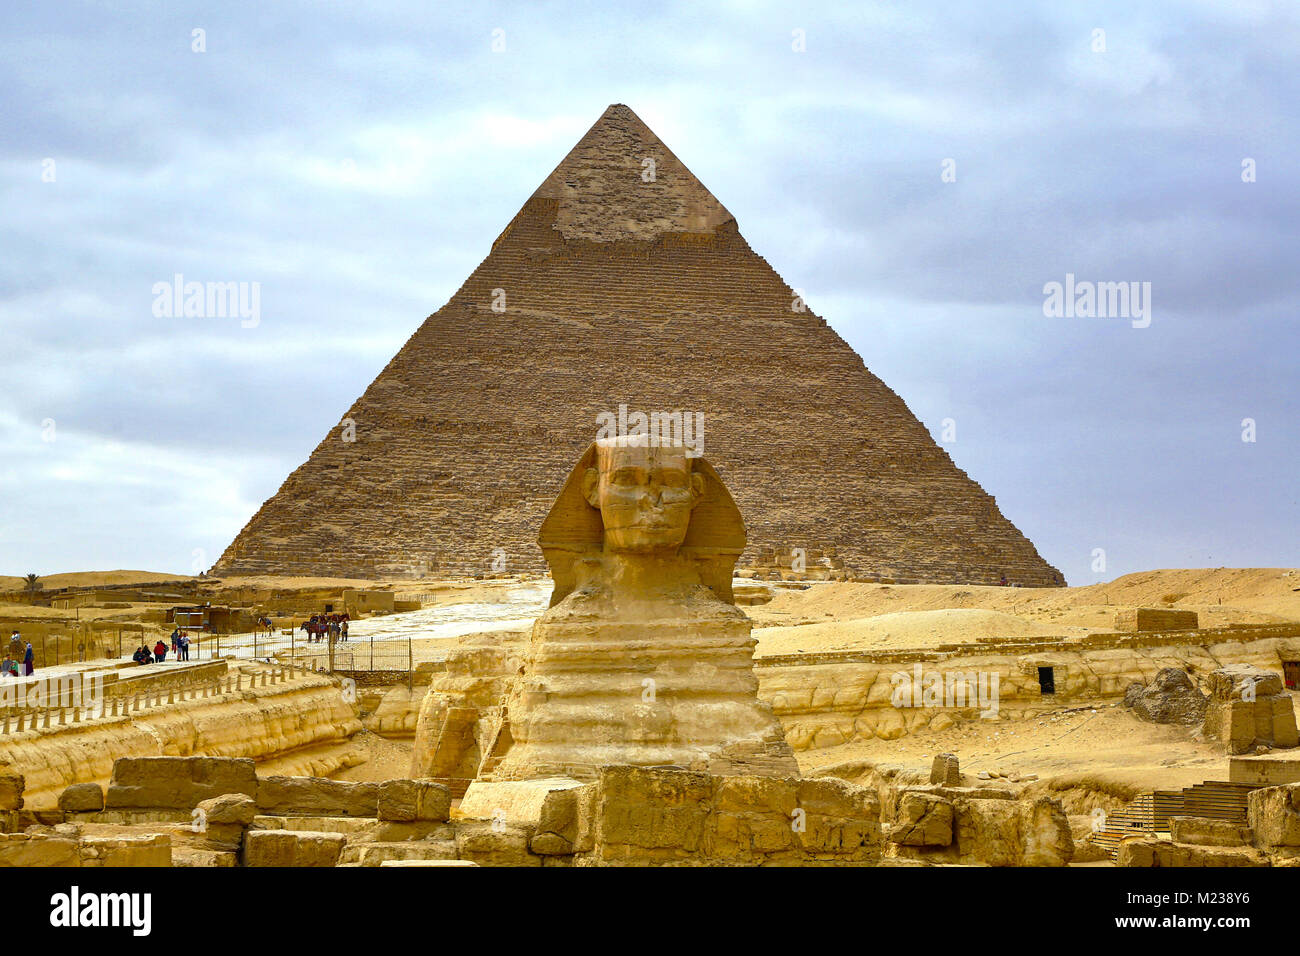 La gran estatua de la Esfinge y la pirámide de Khafre en la meseta de Giza, Cairo, Egipto Foto de stock